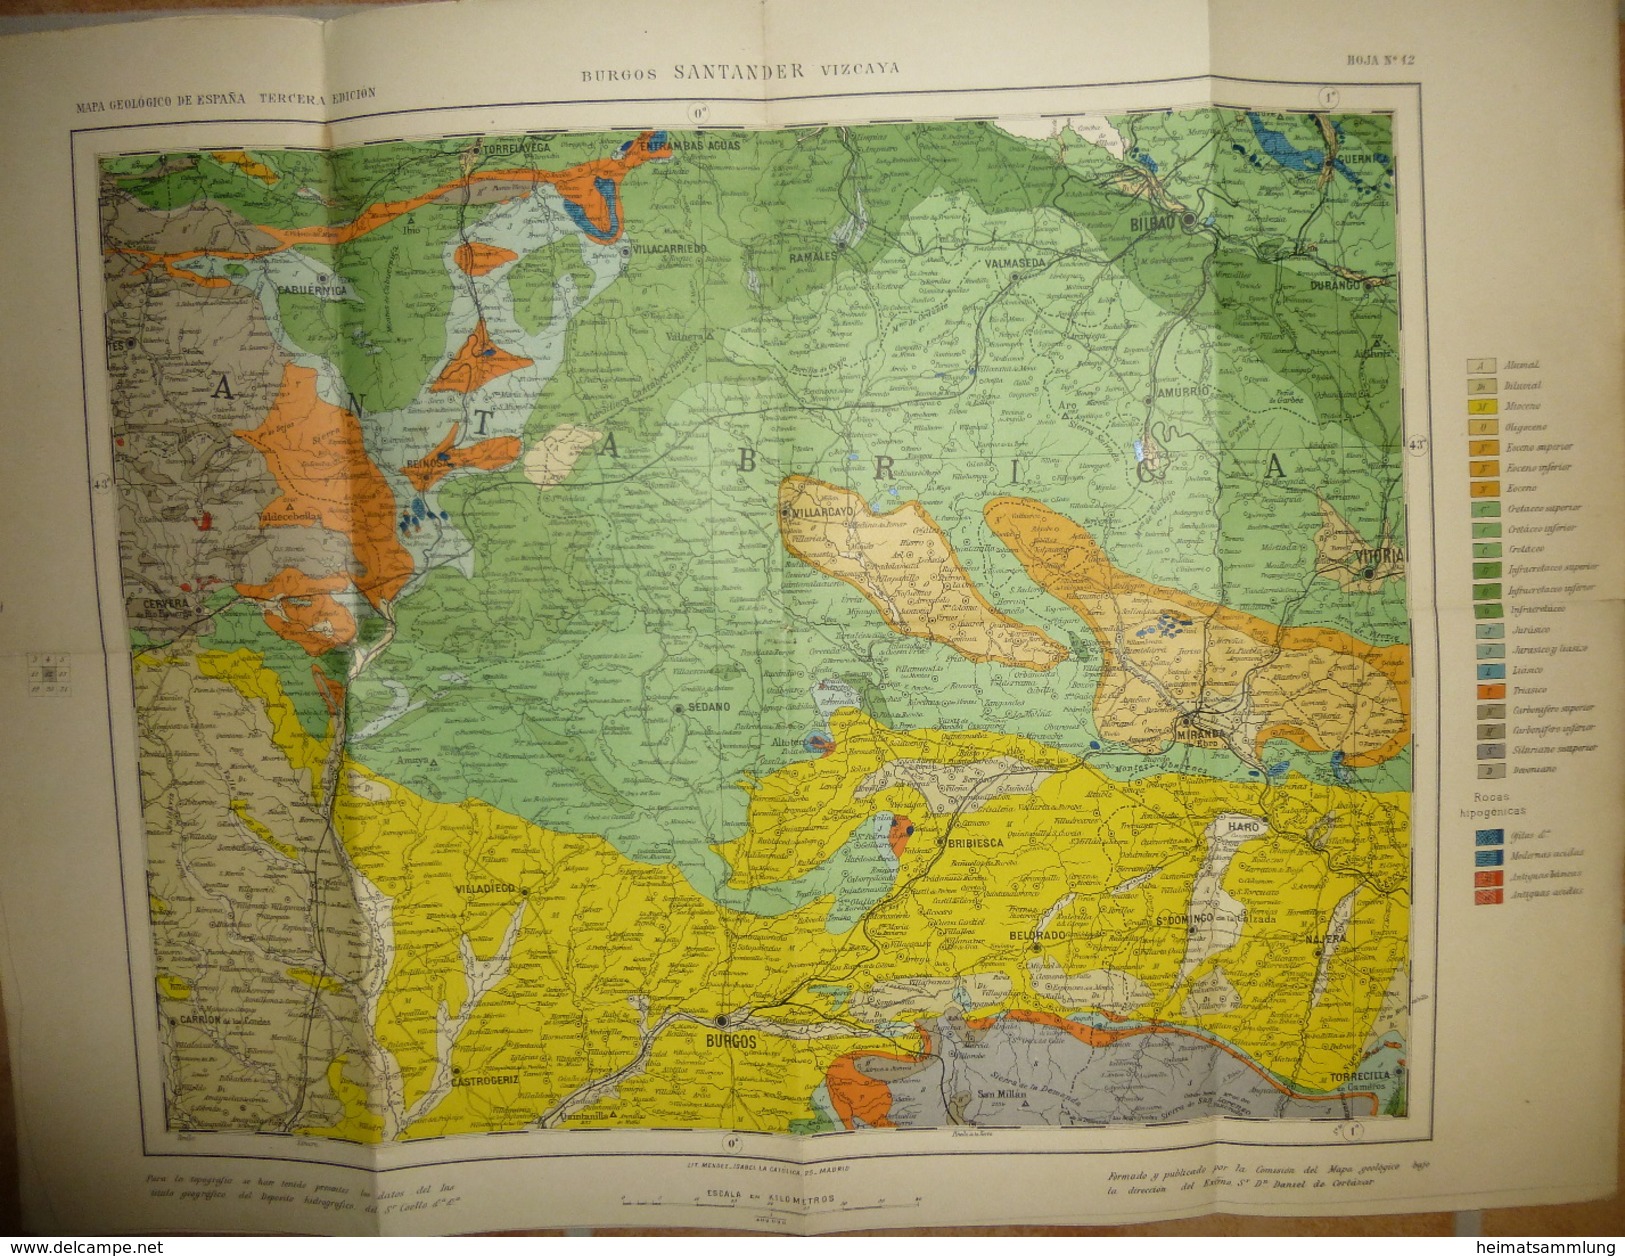 Mapa Geologico De Espana Ca. 1910 - Tercera Edicion - Burgos Santander Vizcaya - Hoja N°12 - 40cm X 54cm - Maßstab 1:400 - Topographische Karten